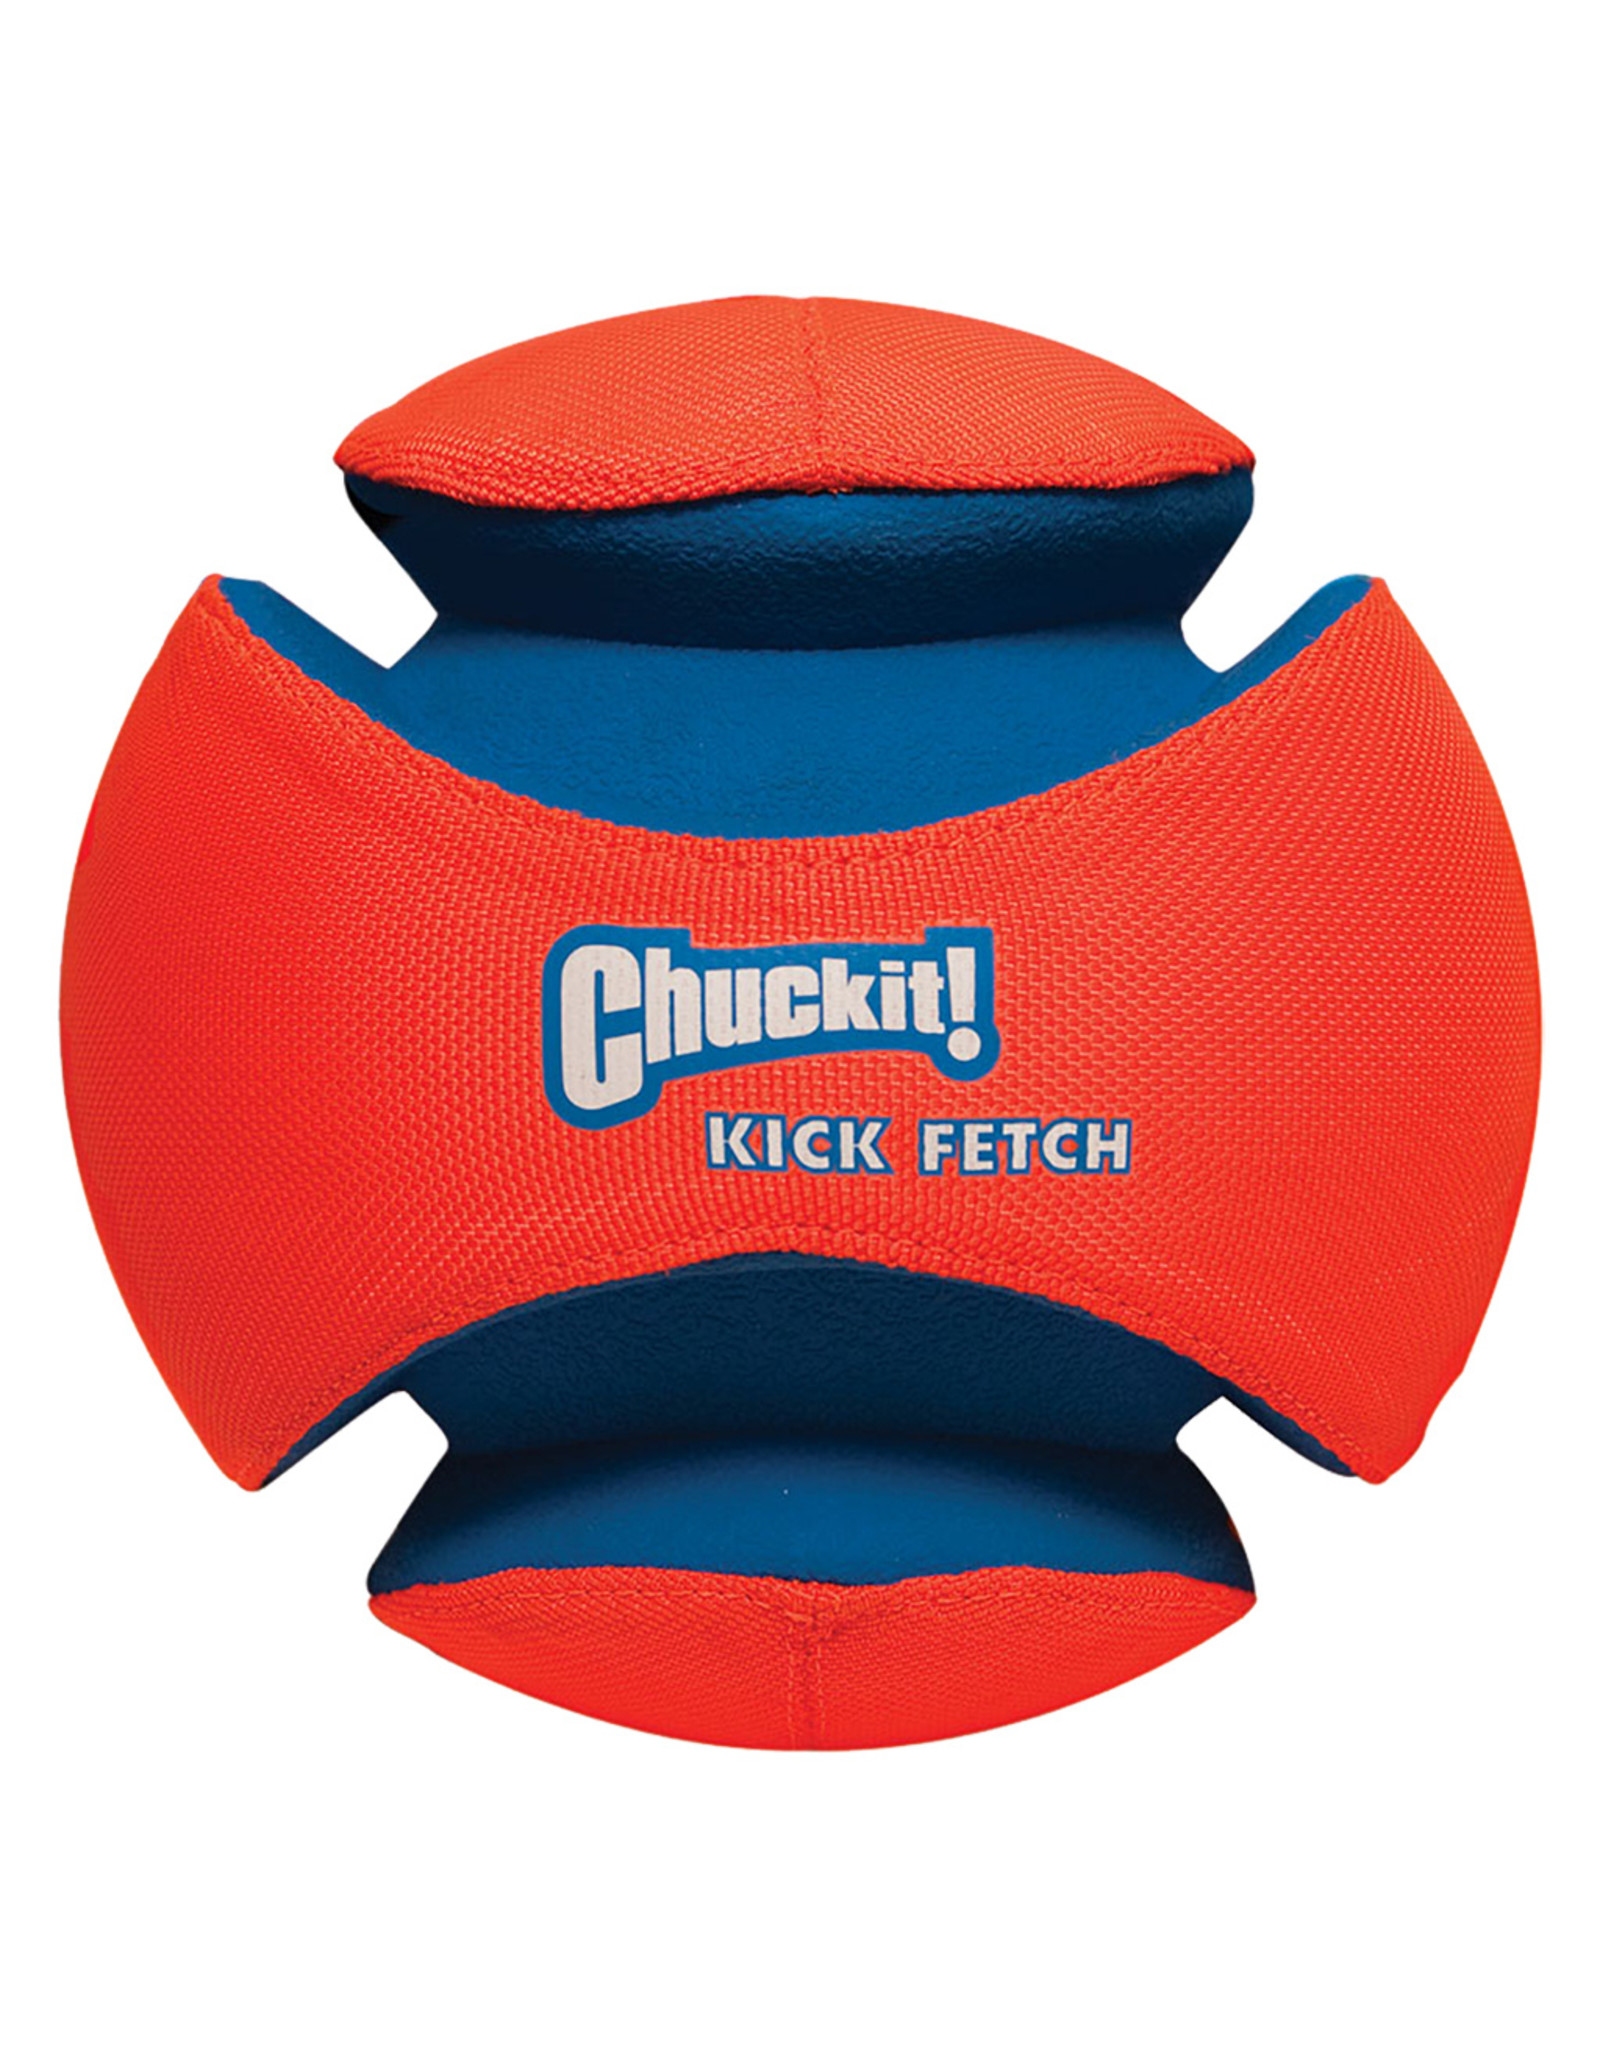 Chuck It! Kick Fetch Ball - Small